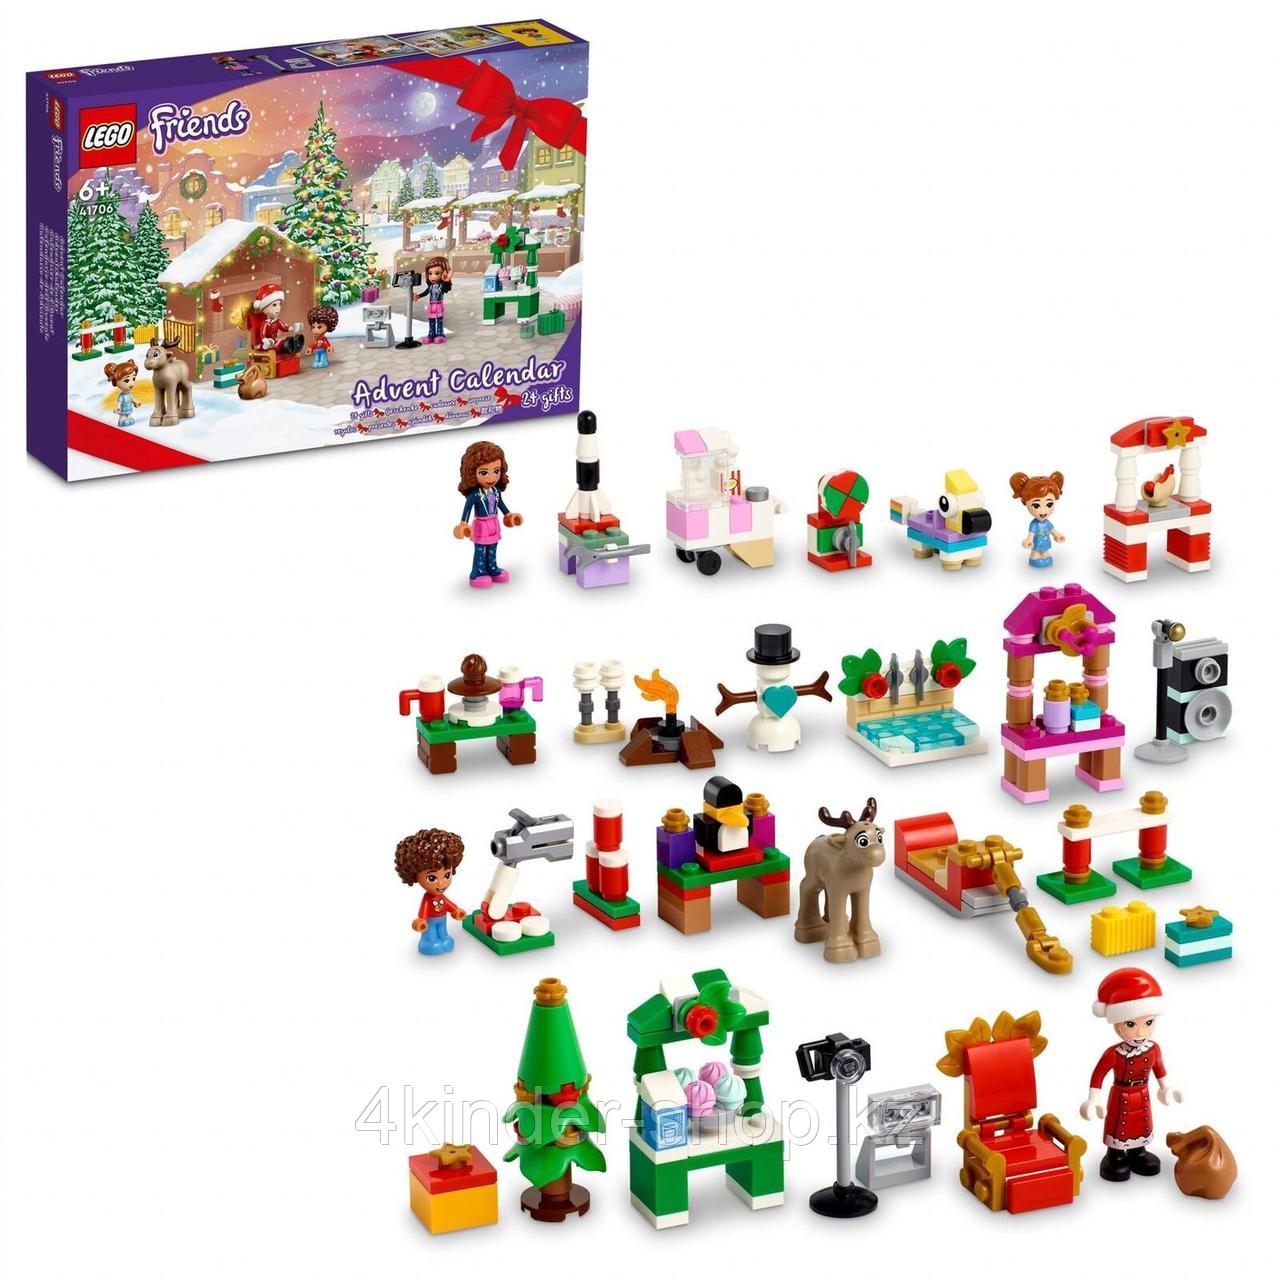 Адвент Календаря LEGO Friends "Рождественский Календарь" 41706